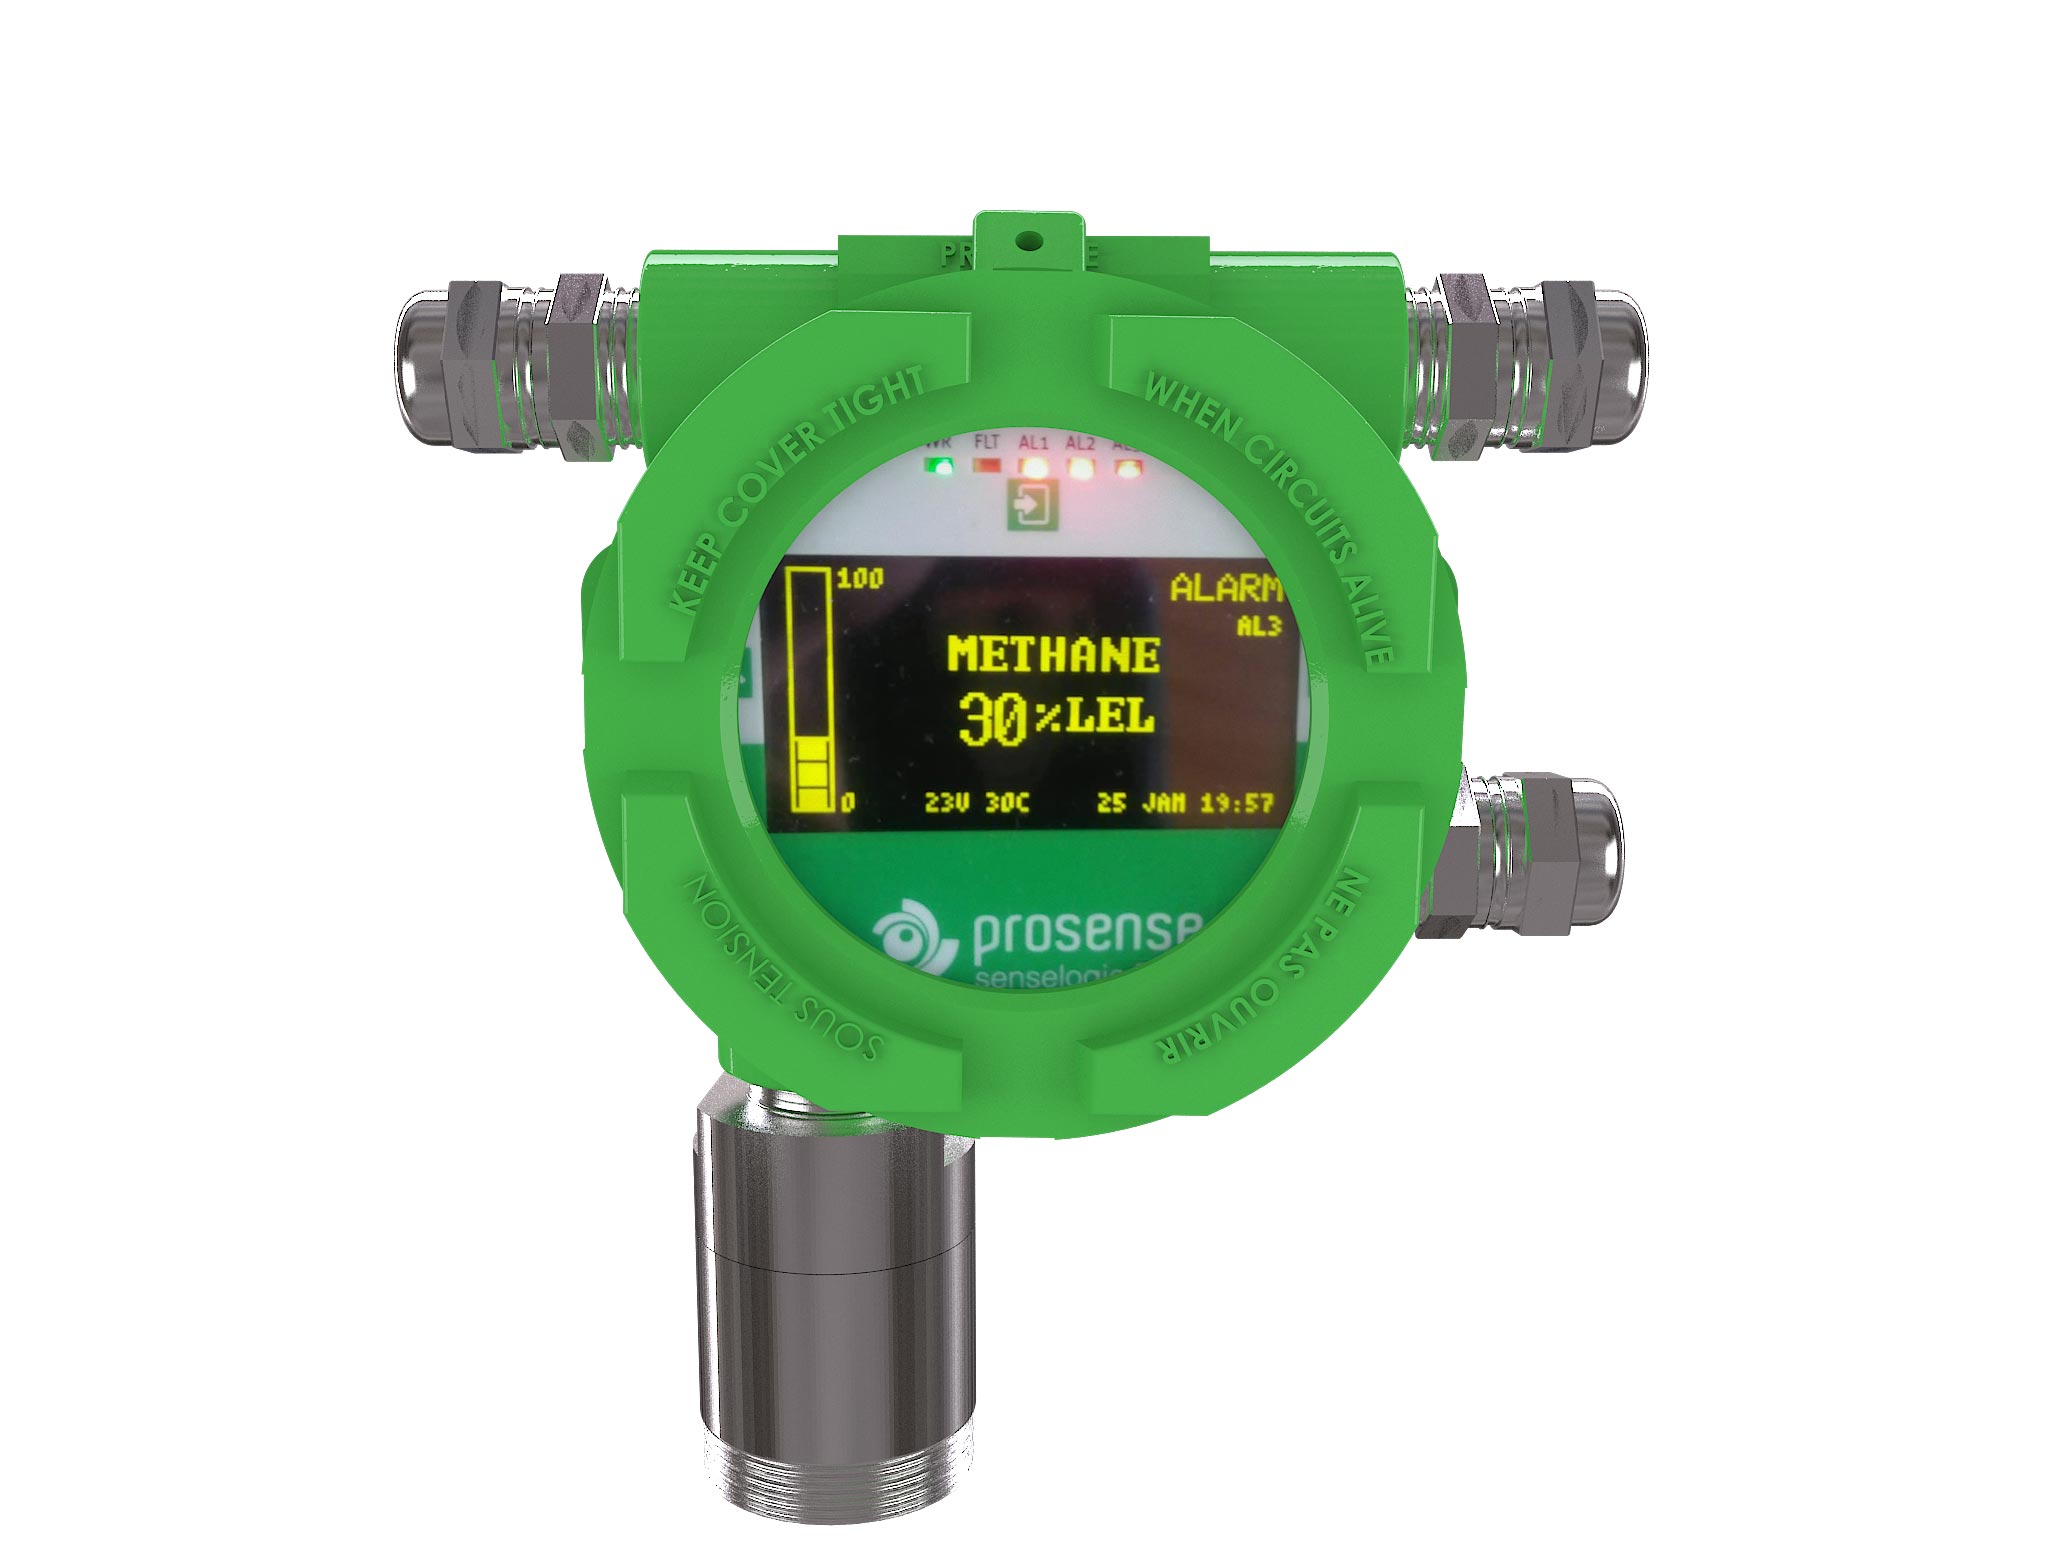 PQD-7735 Nonane Gas Detector